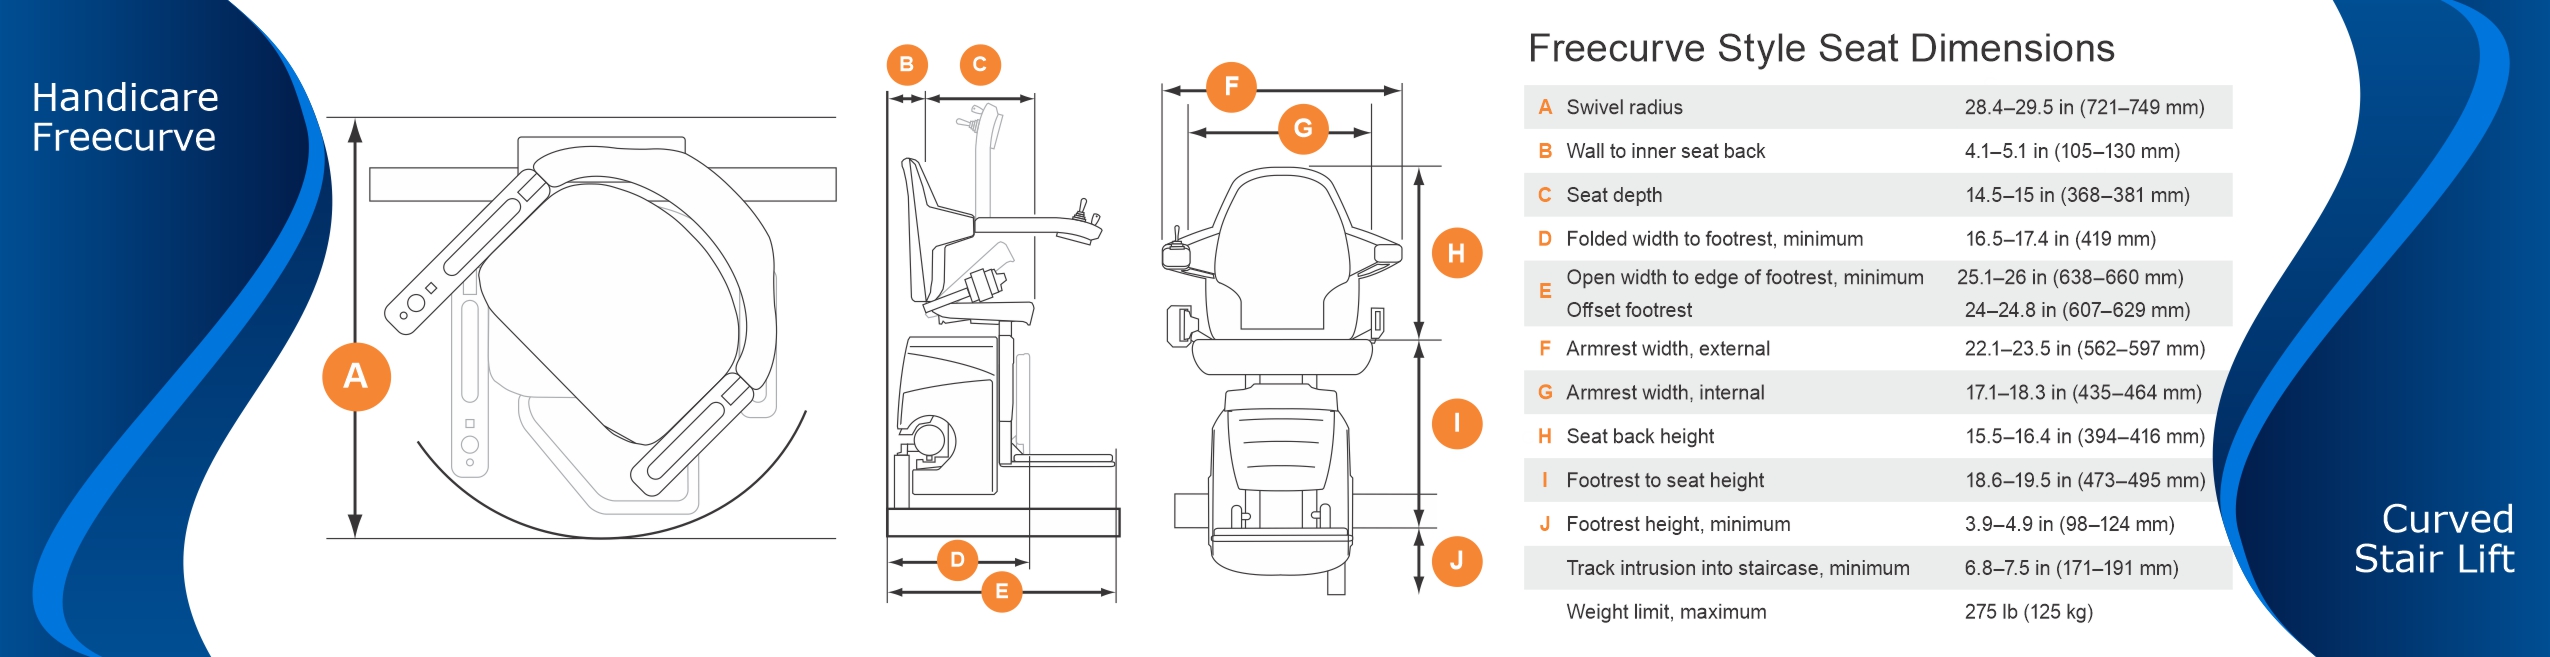 Handicare Freecurve Seat Dimensions